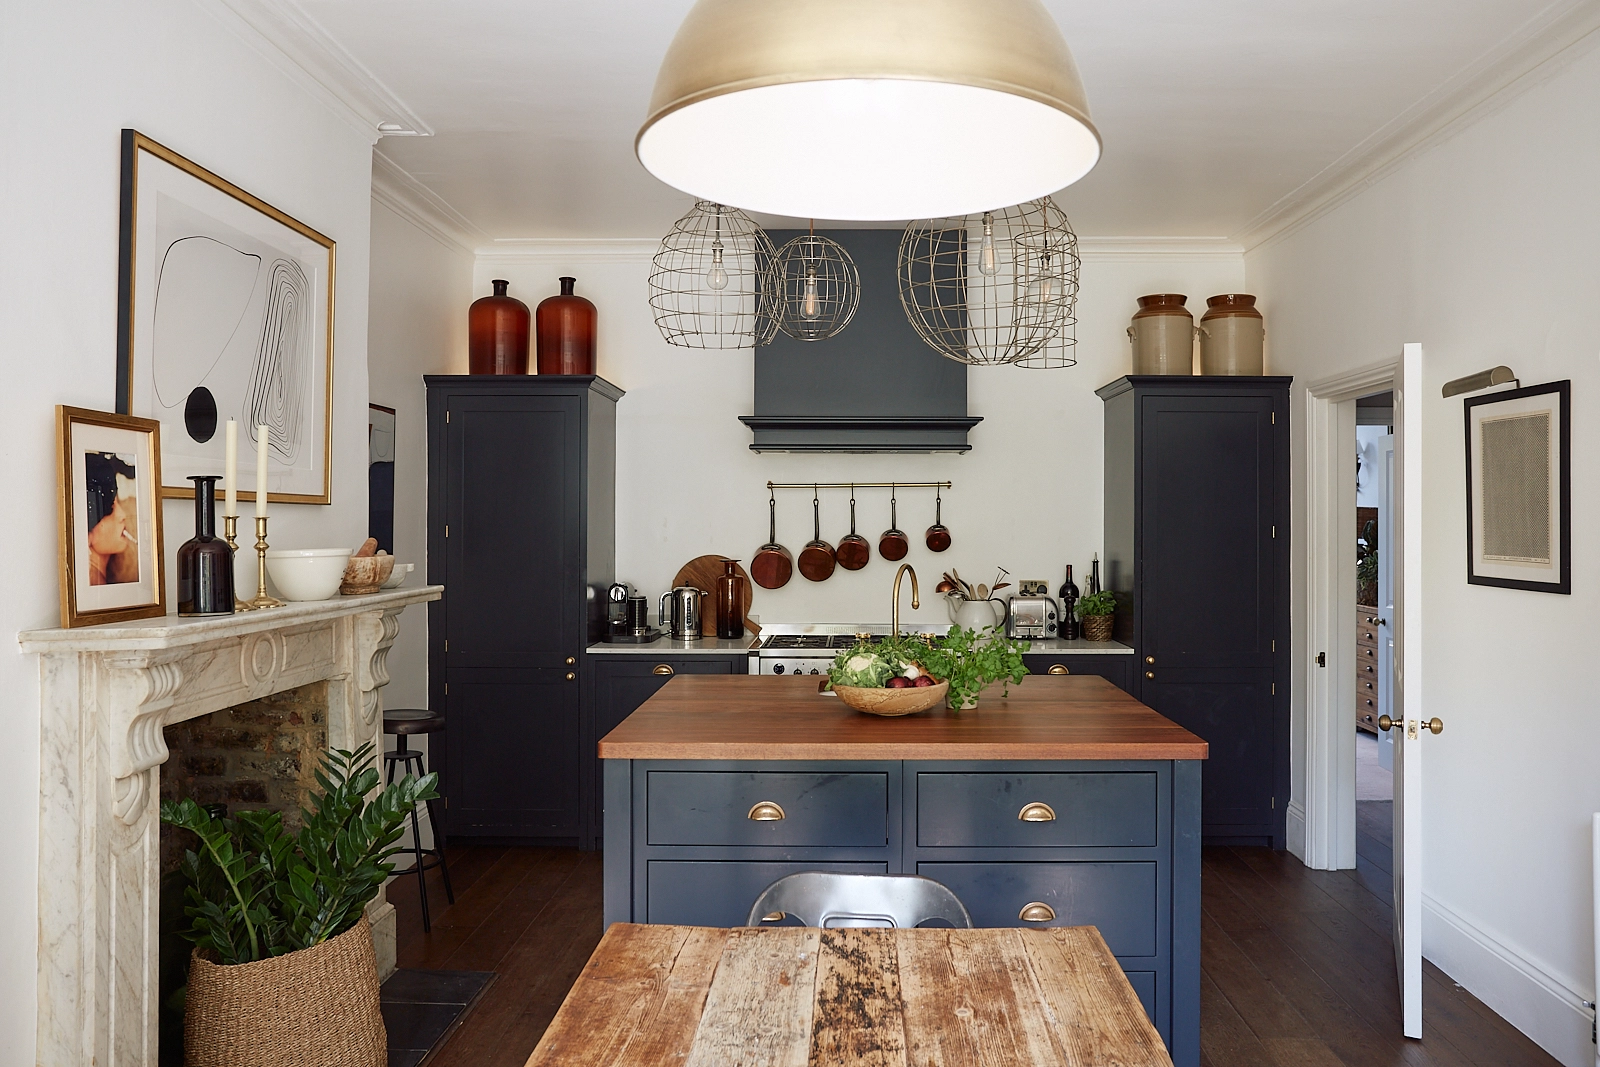 Phòng bếp thiết kế gọn gàng với hệ tủ lưu trữ cân xứng hai bên với màu xanh đậm tạo nét vững chãi và mạnh mẽ. Đảo bếp ở trung tâm sử dụng tone màu xanh có phần nhạt hơn, nổi bật bởi những phần tay nắm mạ vàng đồng.